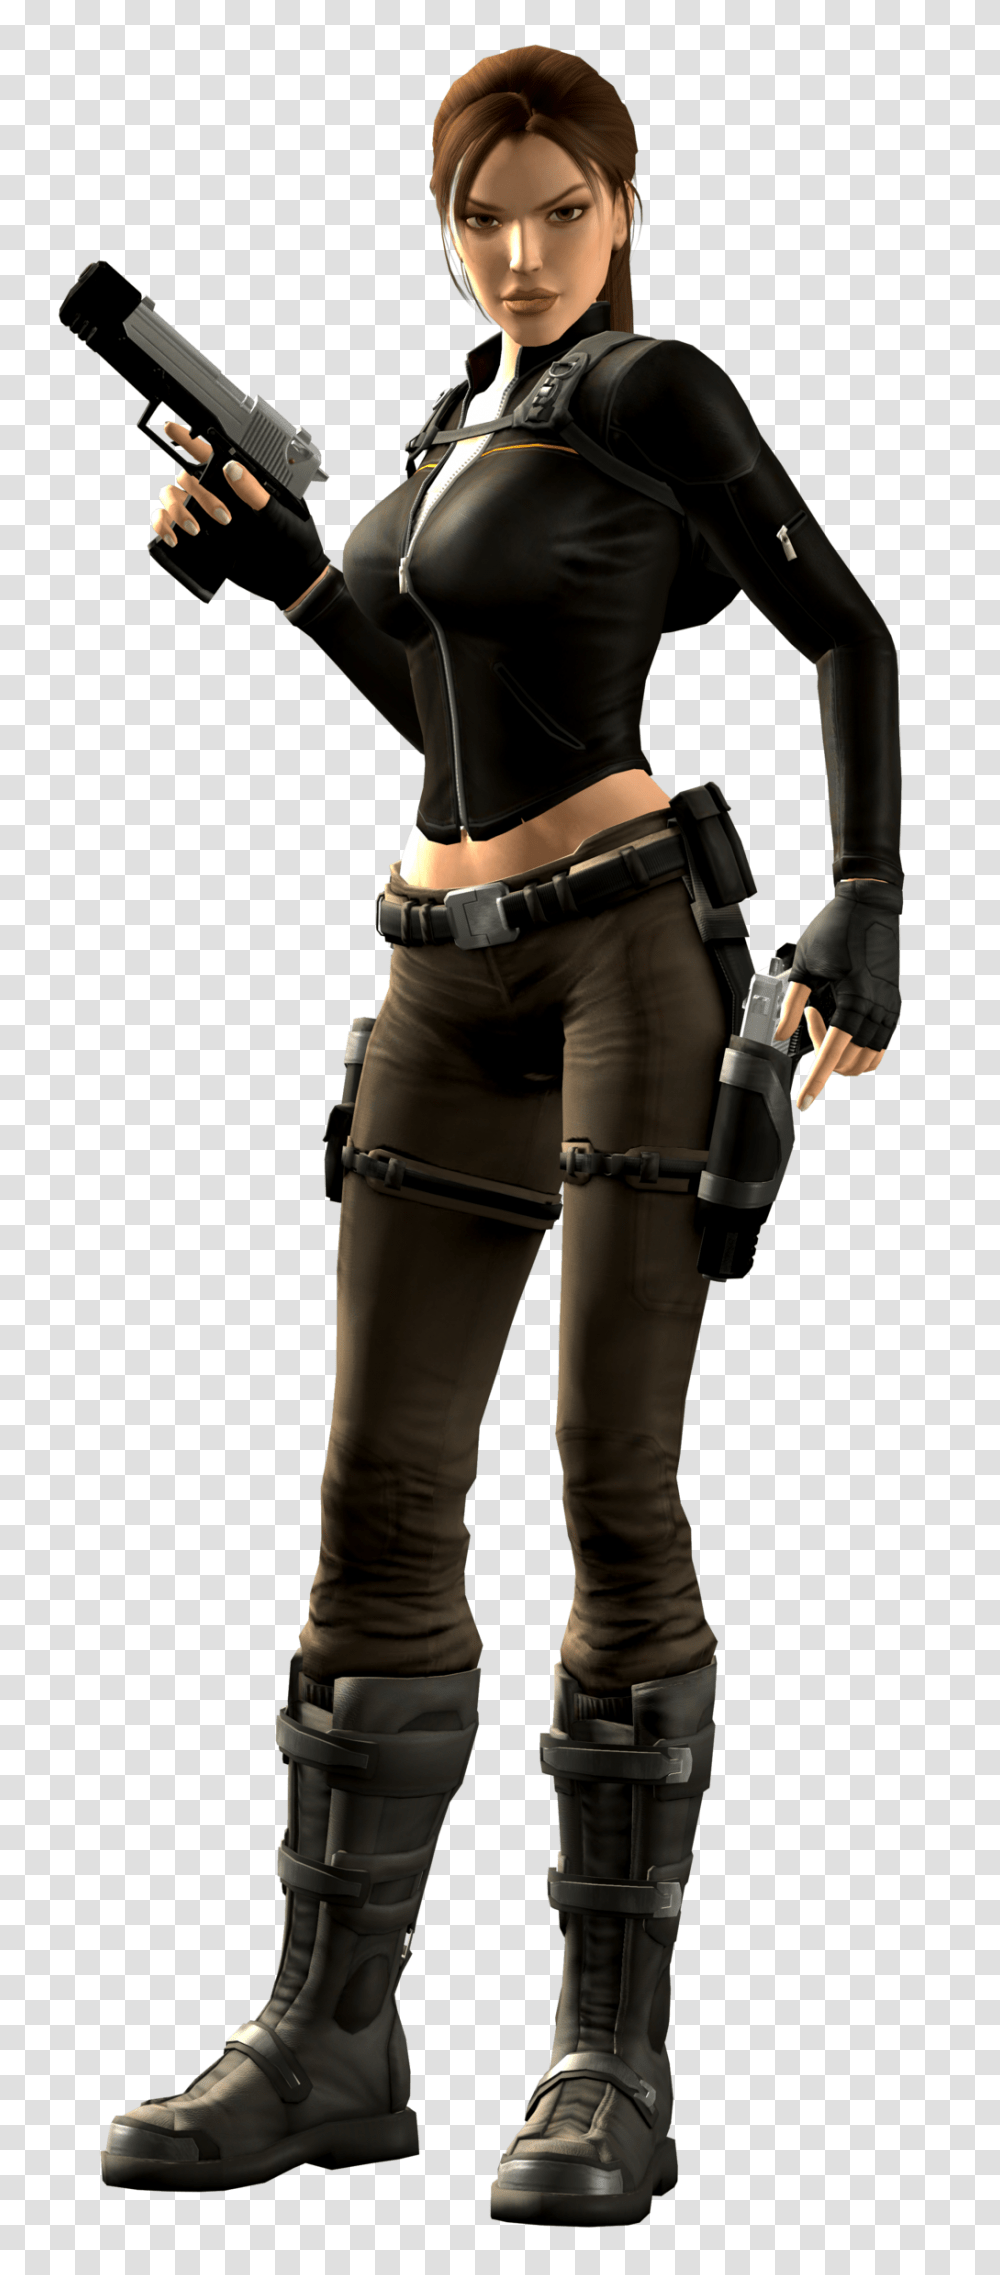 Lara Croft, Character, Person, Military Uniform Transparent Png